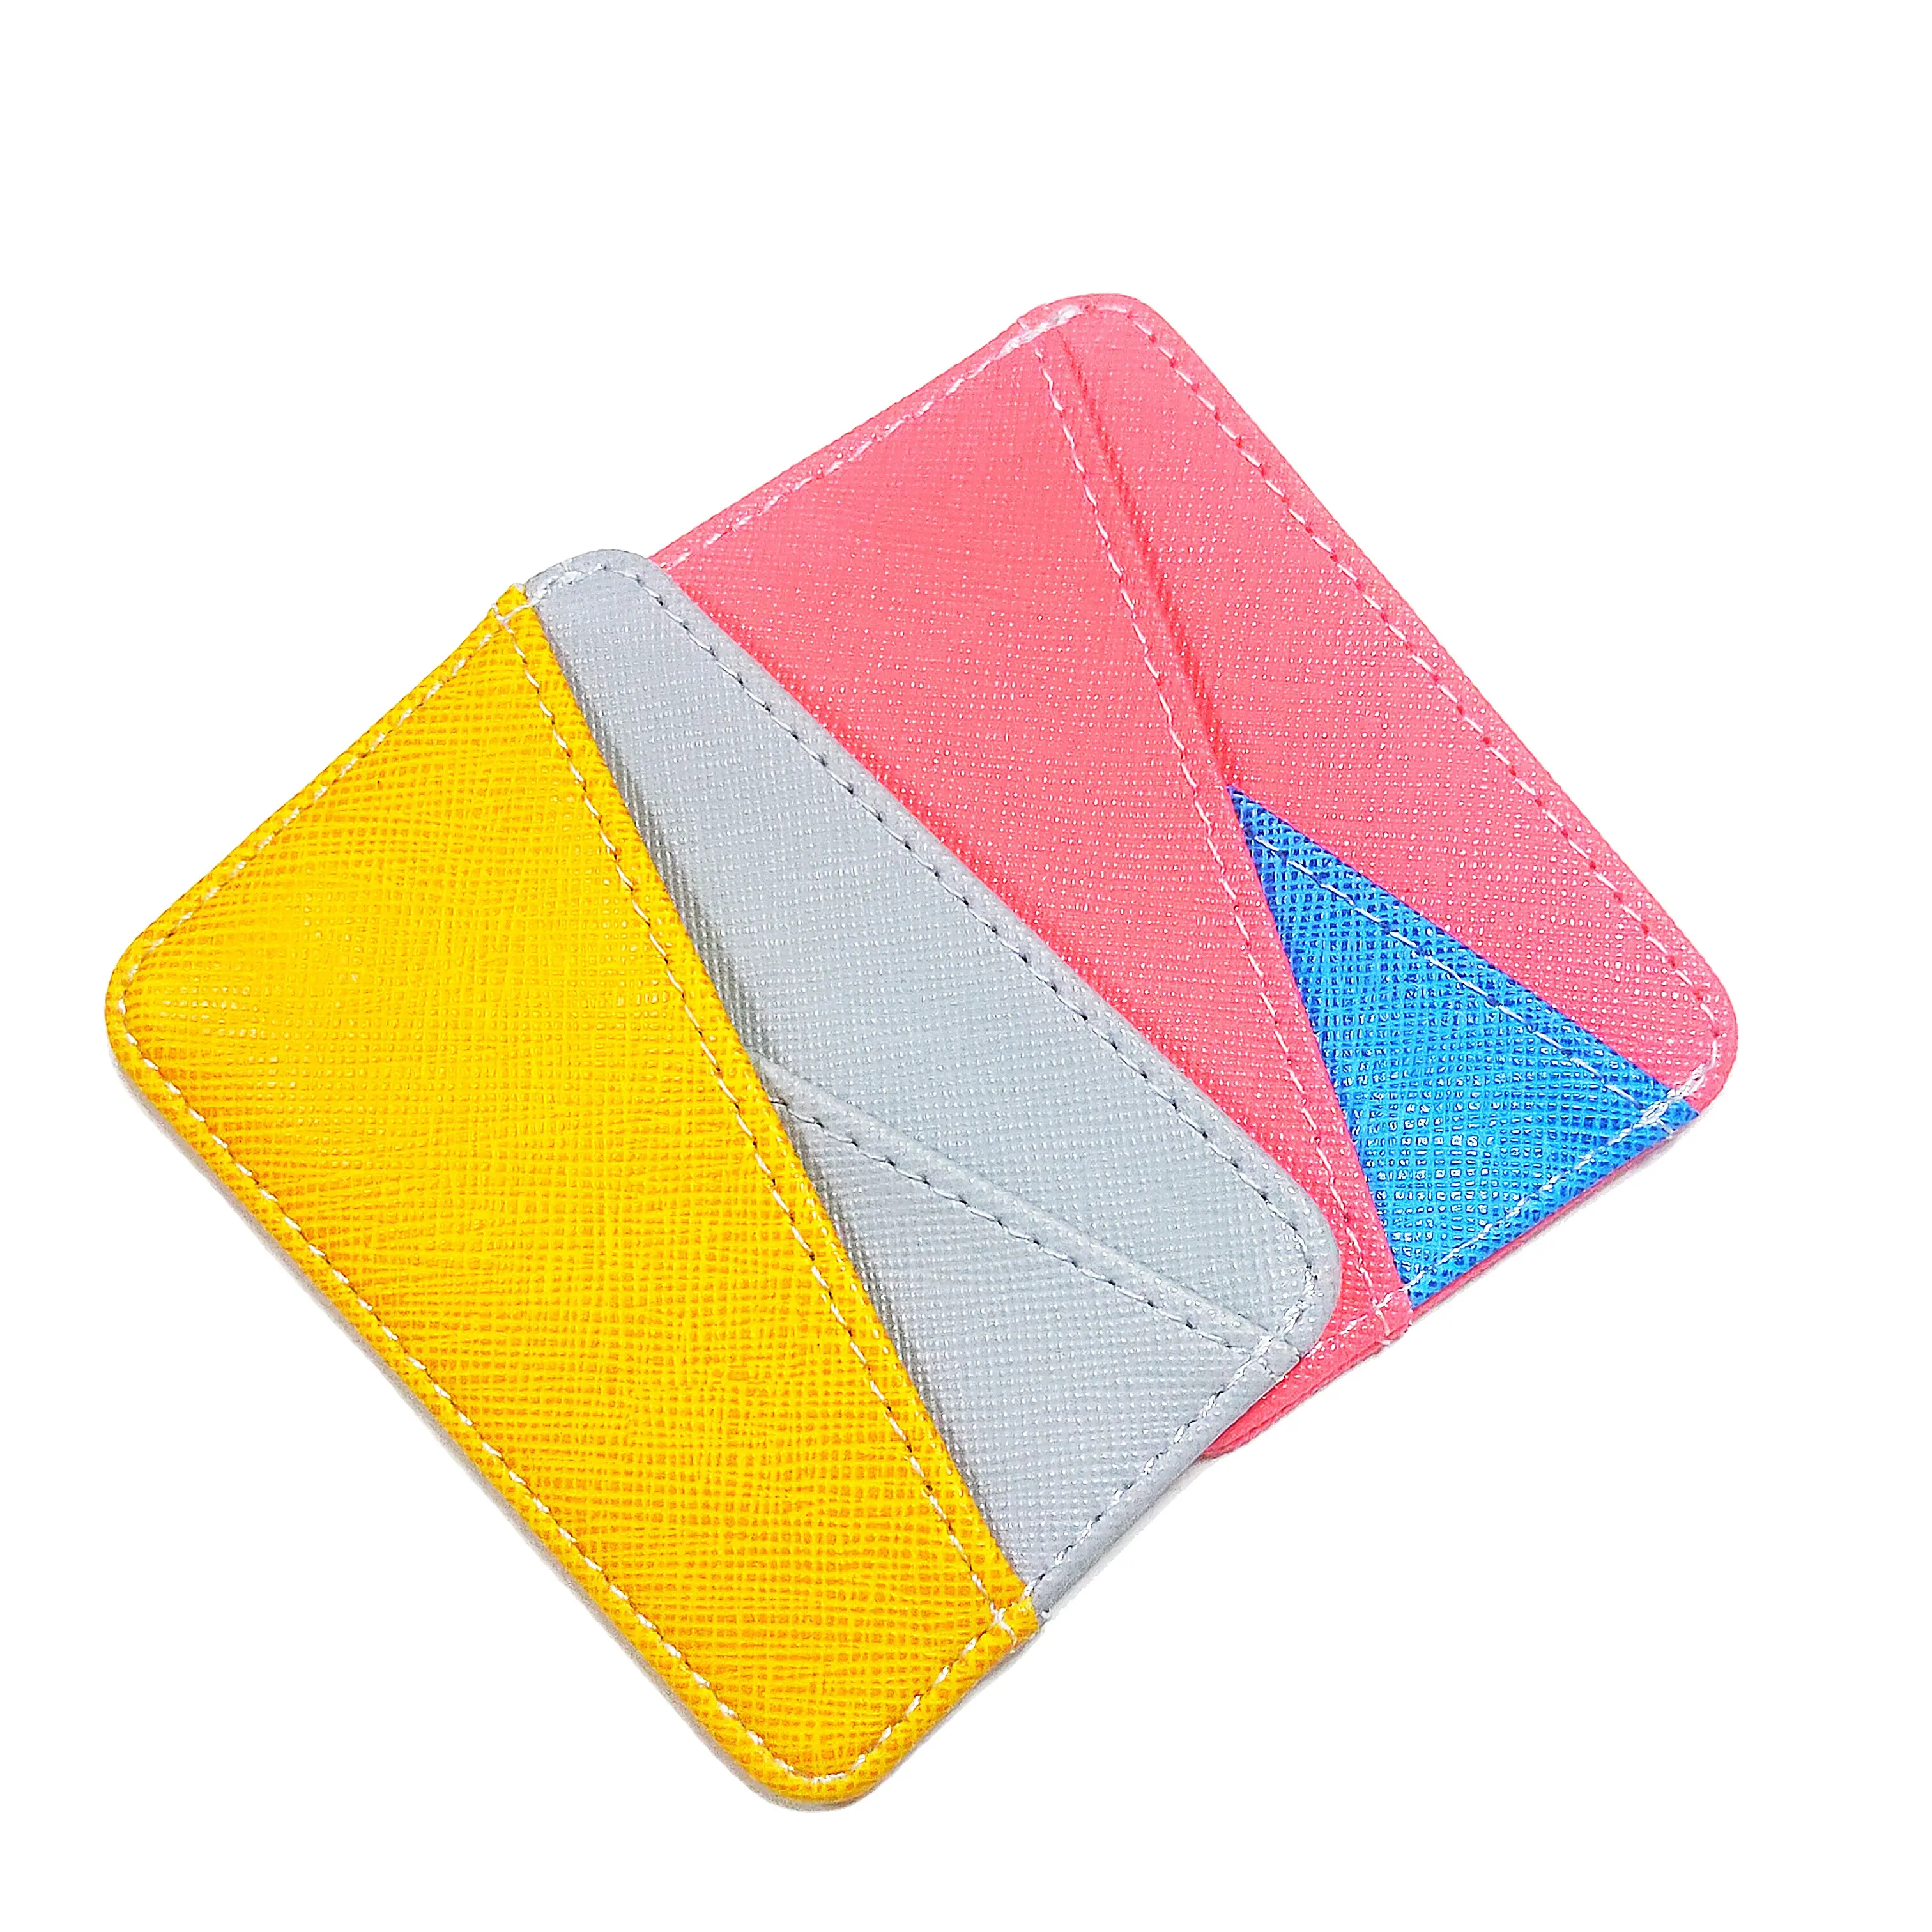 Neues Design Benutzer definierte Farbe Leder Karten halter Kreditkarten inhaber Brieftasche